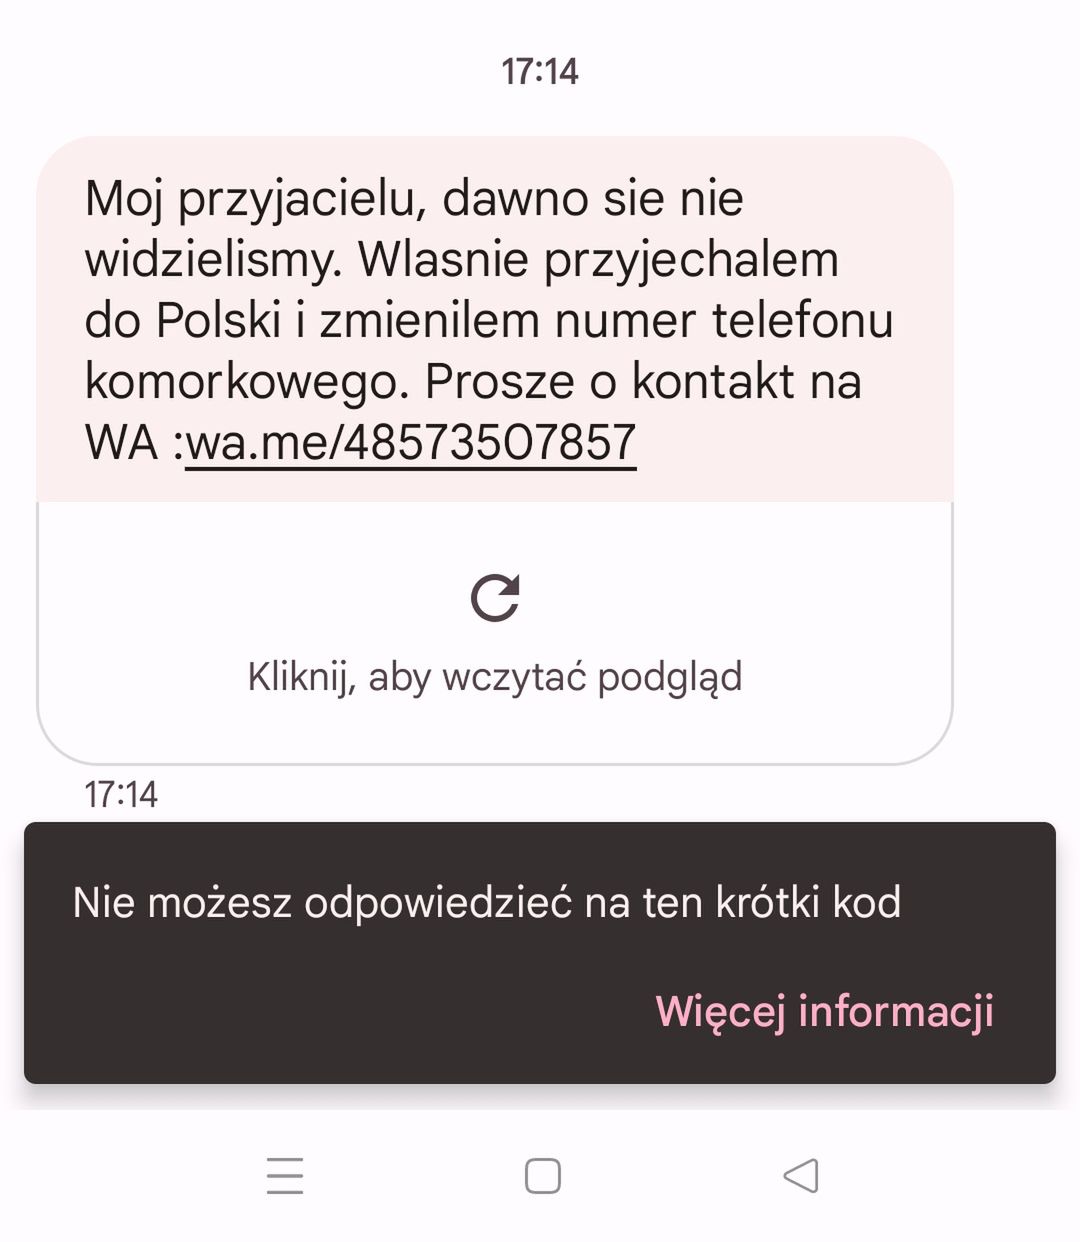 Fałszywy SMS zachęcający do kontaktu przez WhatsAppa